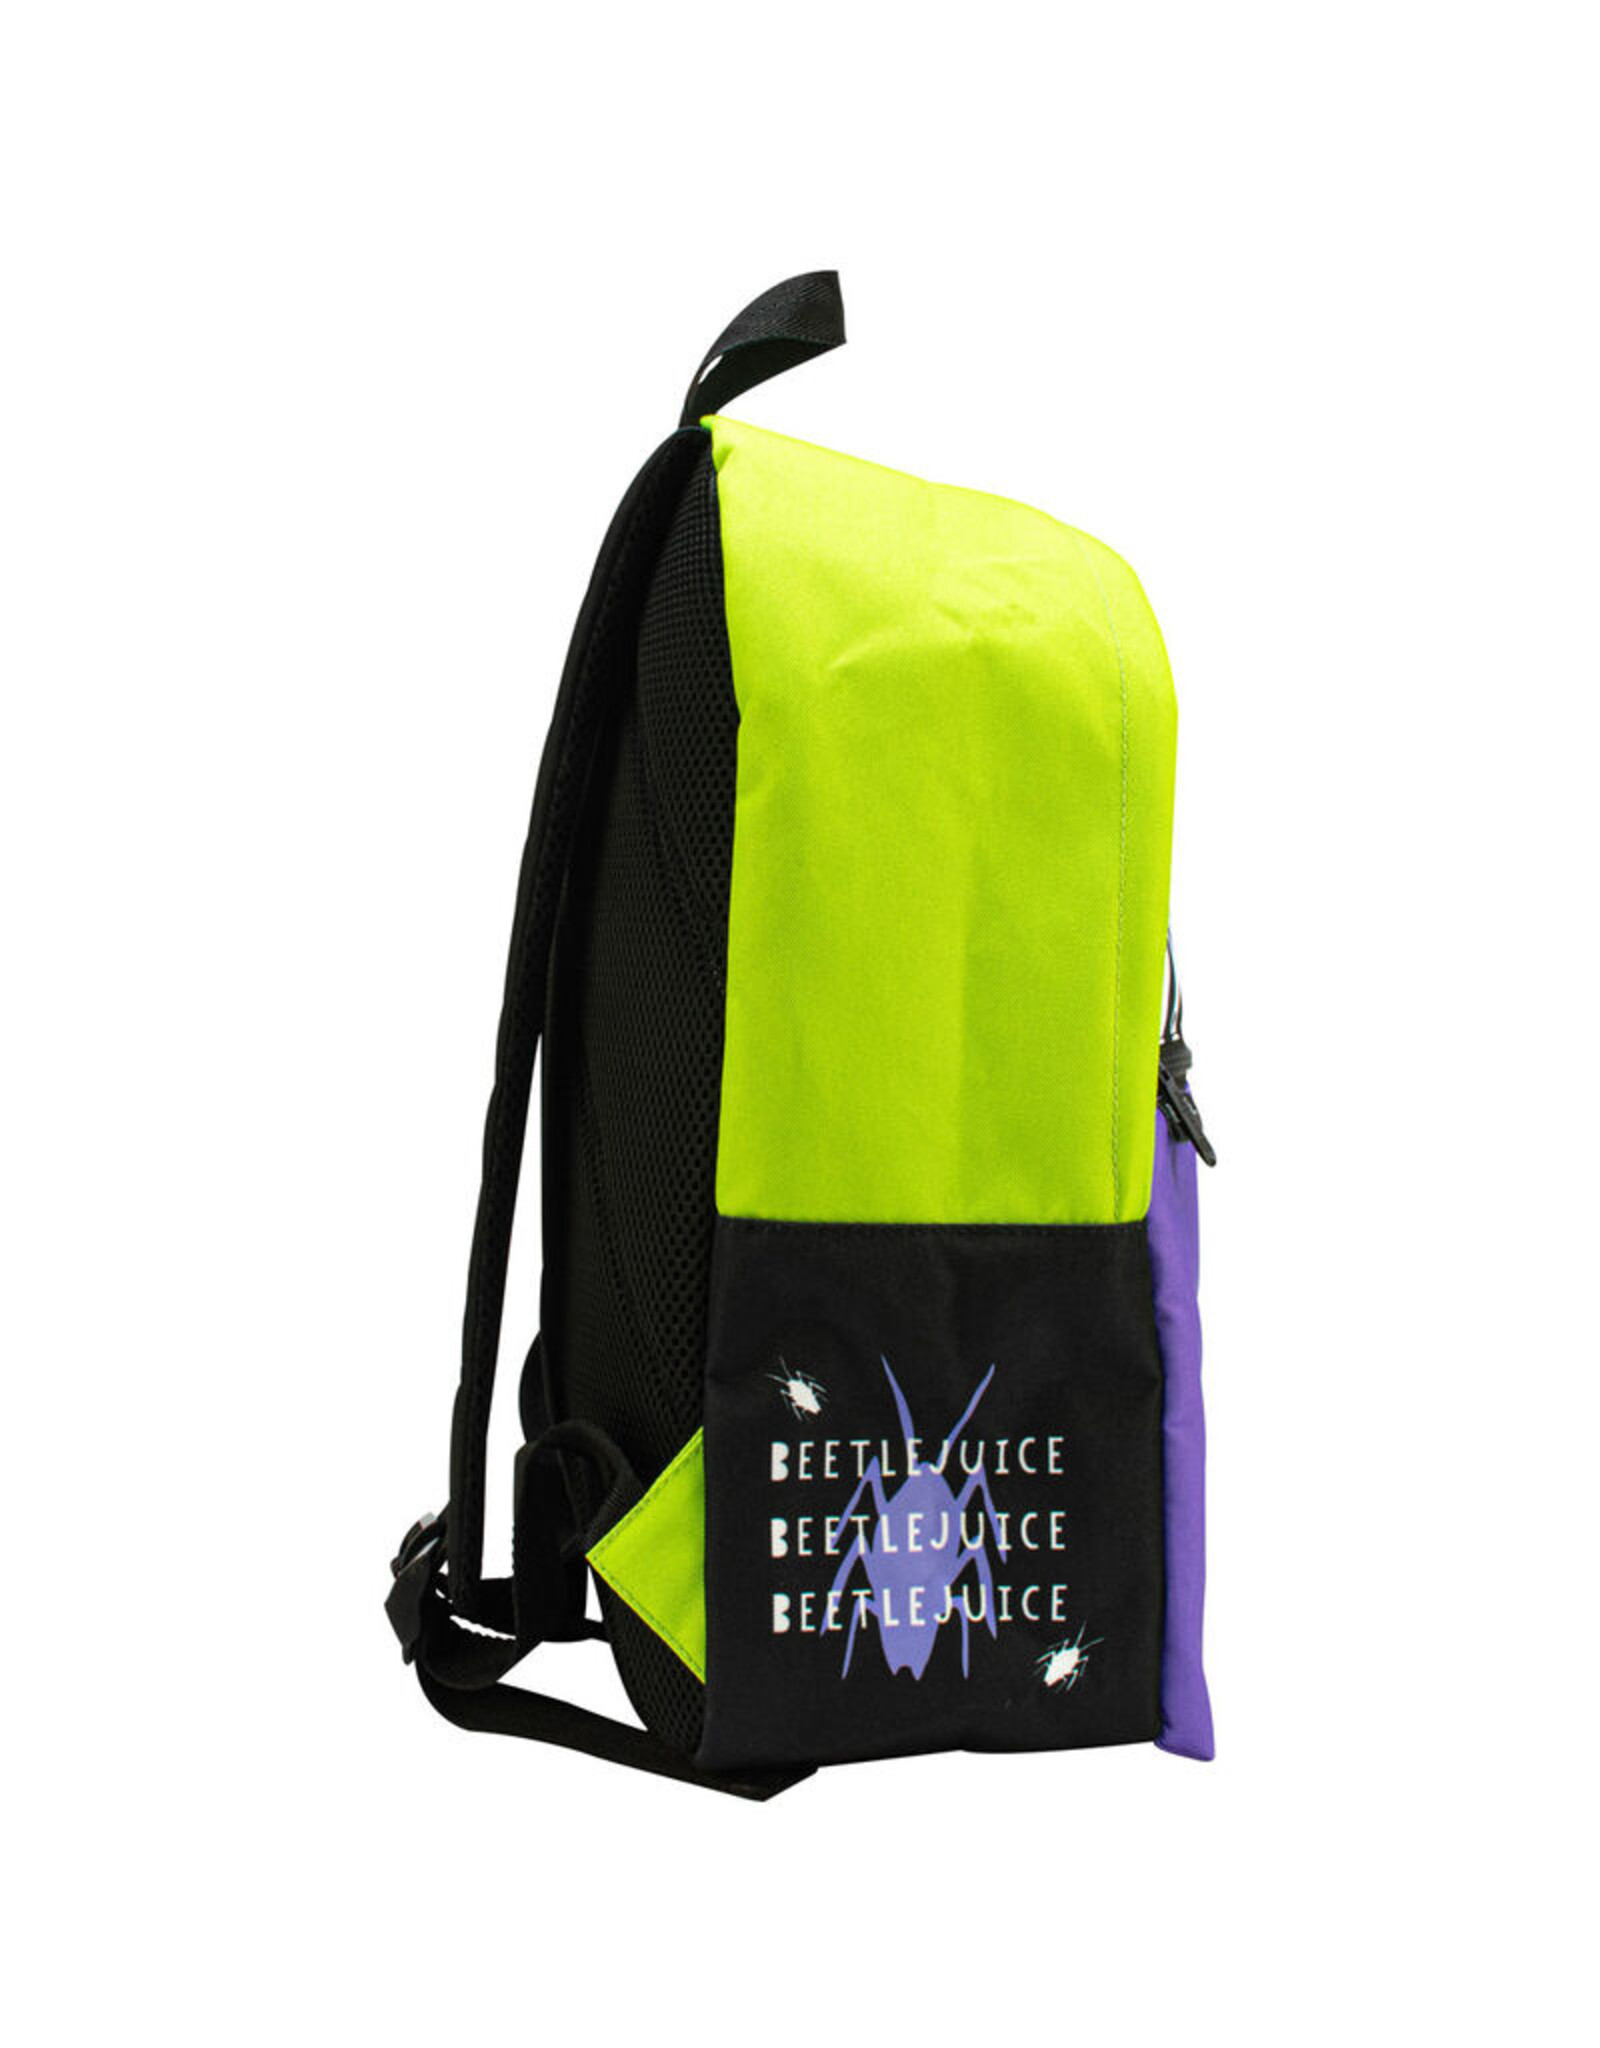 Blue Sky Merchandise backpacks - Beetlejuice backpack 40cm